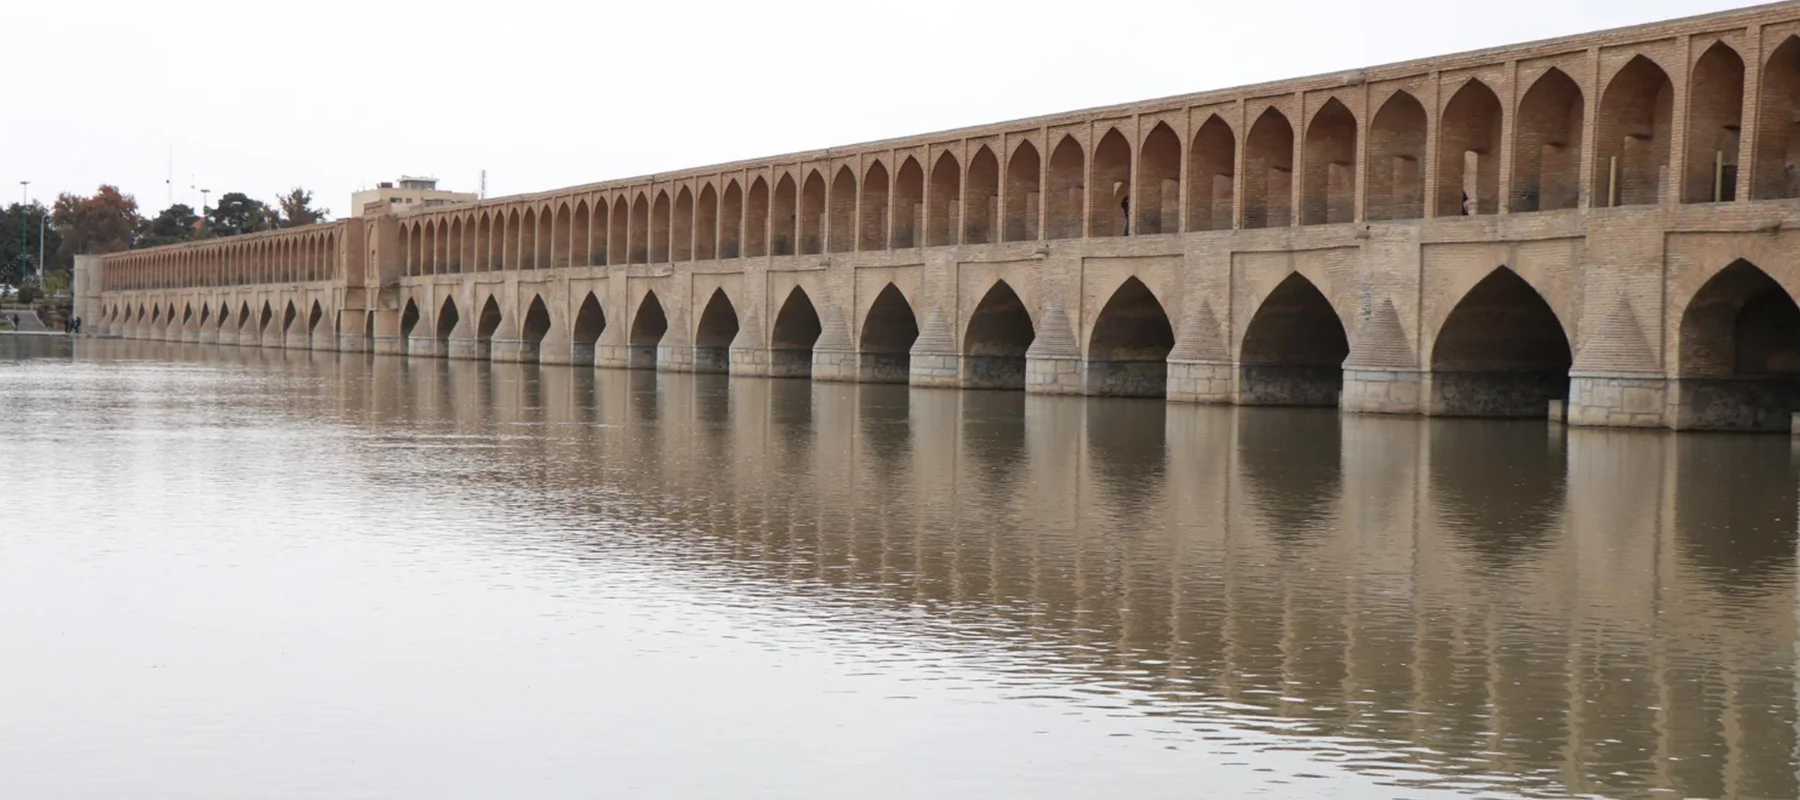 جسر الثلاثة وثلاثون في أصفهان: نزهة عبر التاريخ